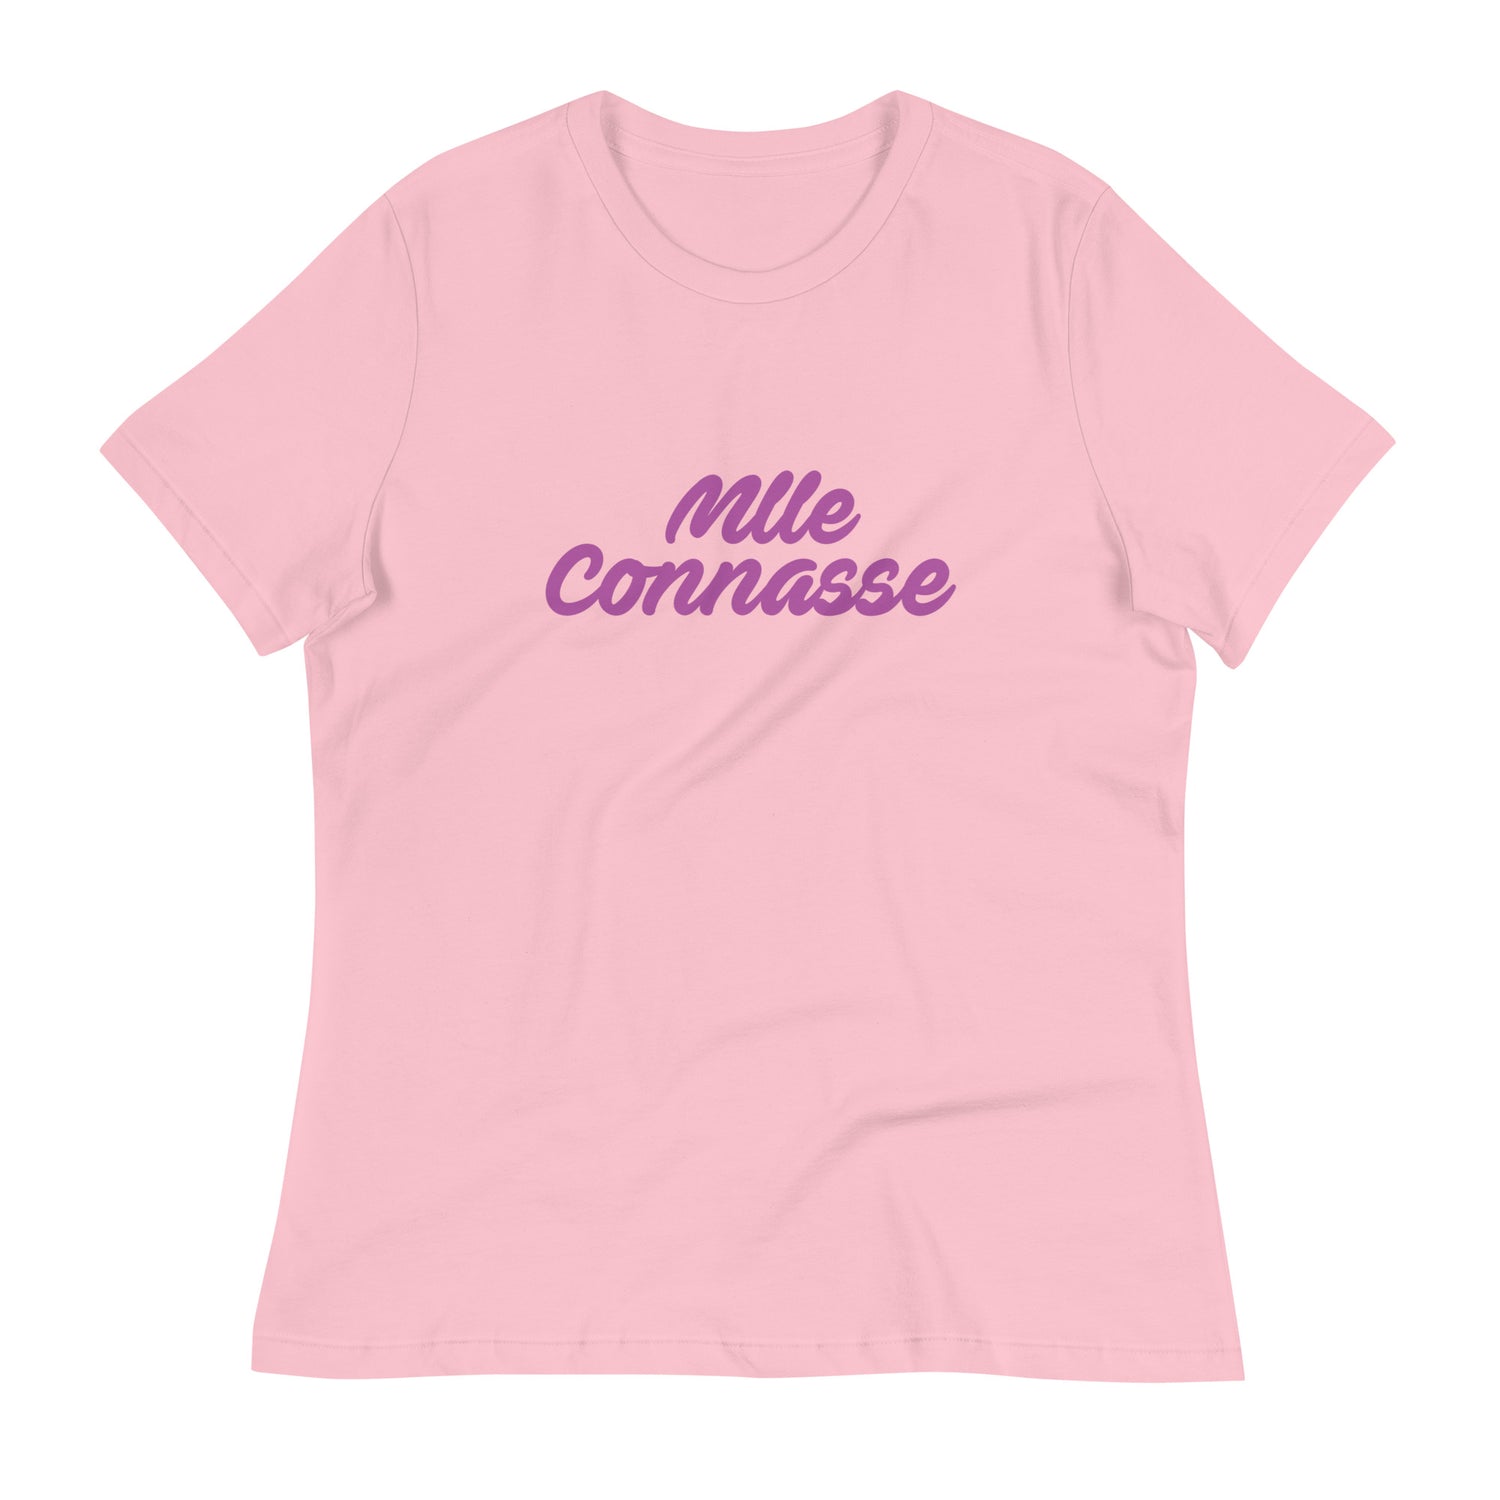 Mlle connasse - T-shirt Décontracté pour Femme